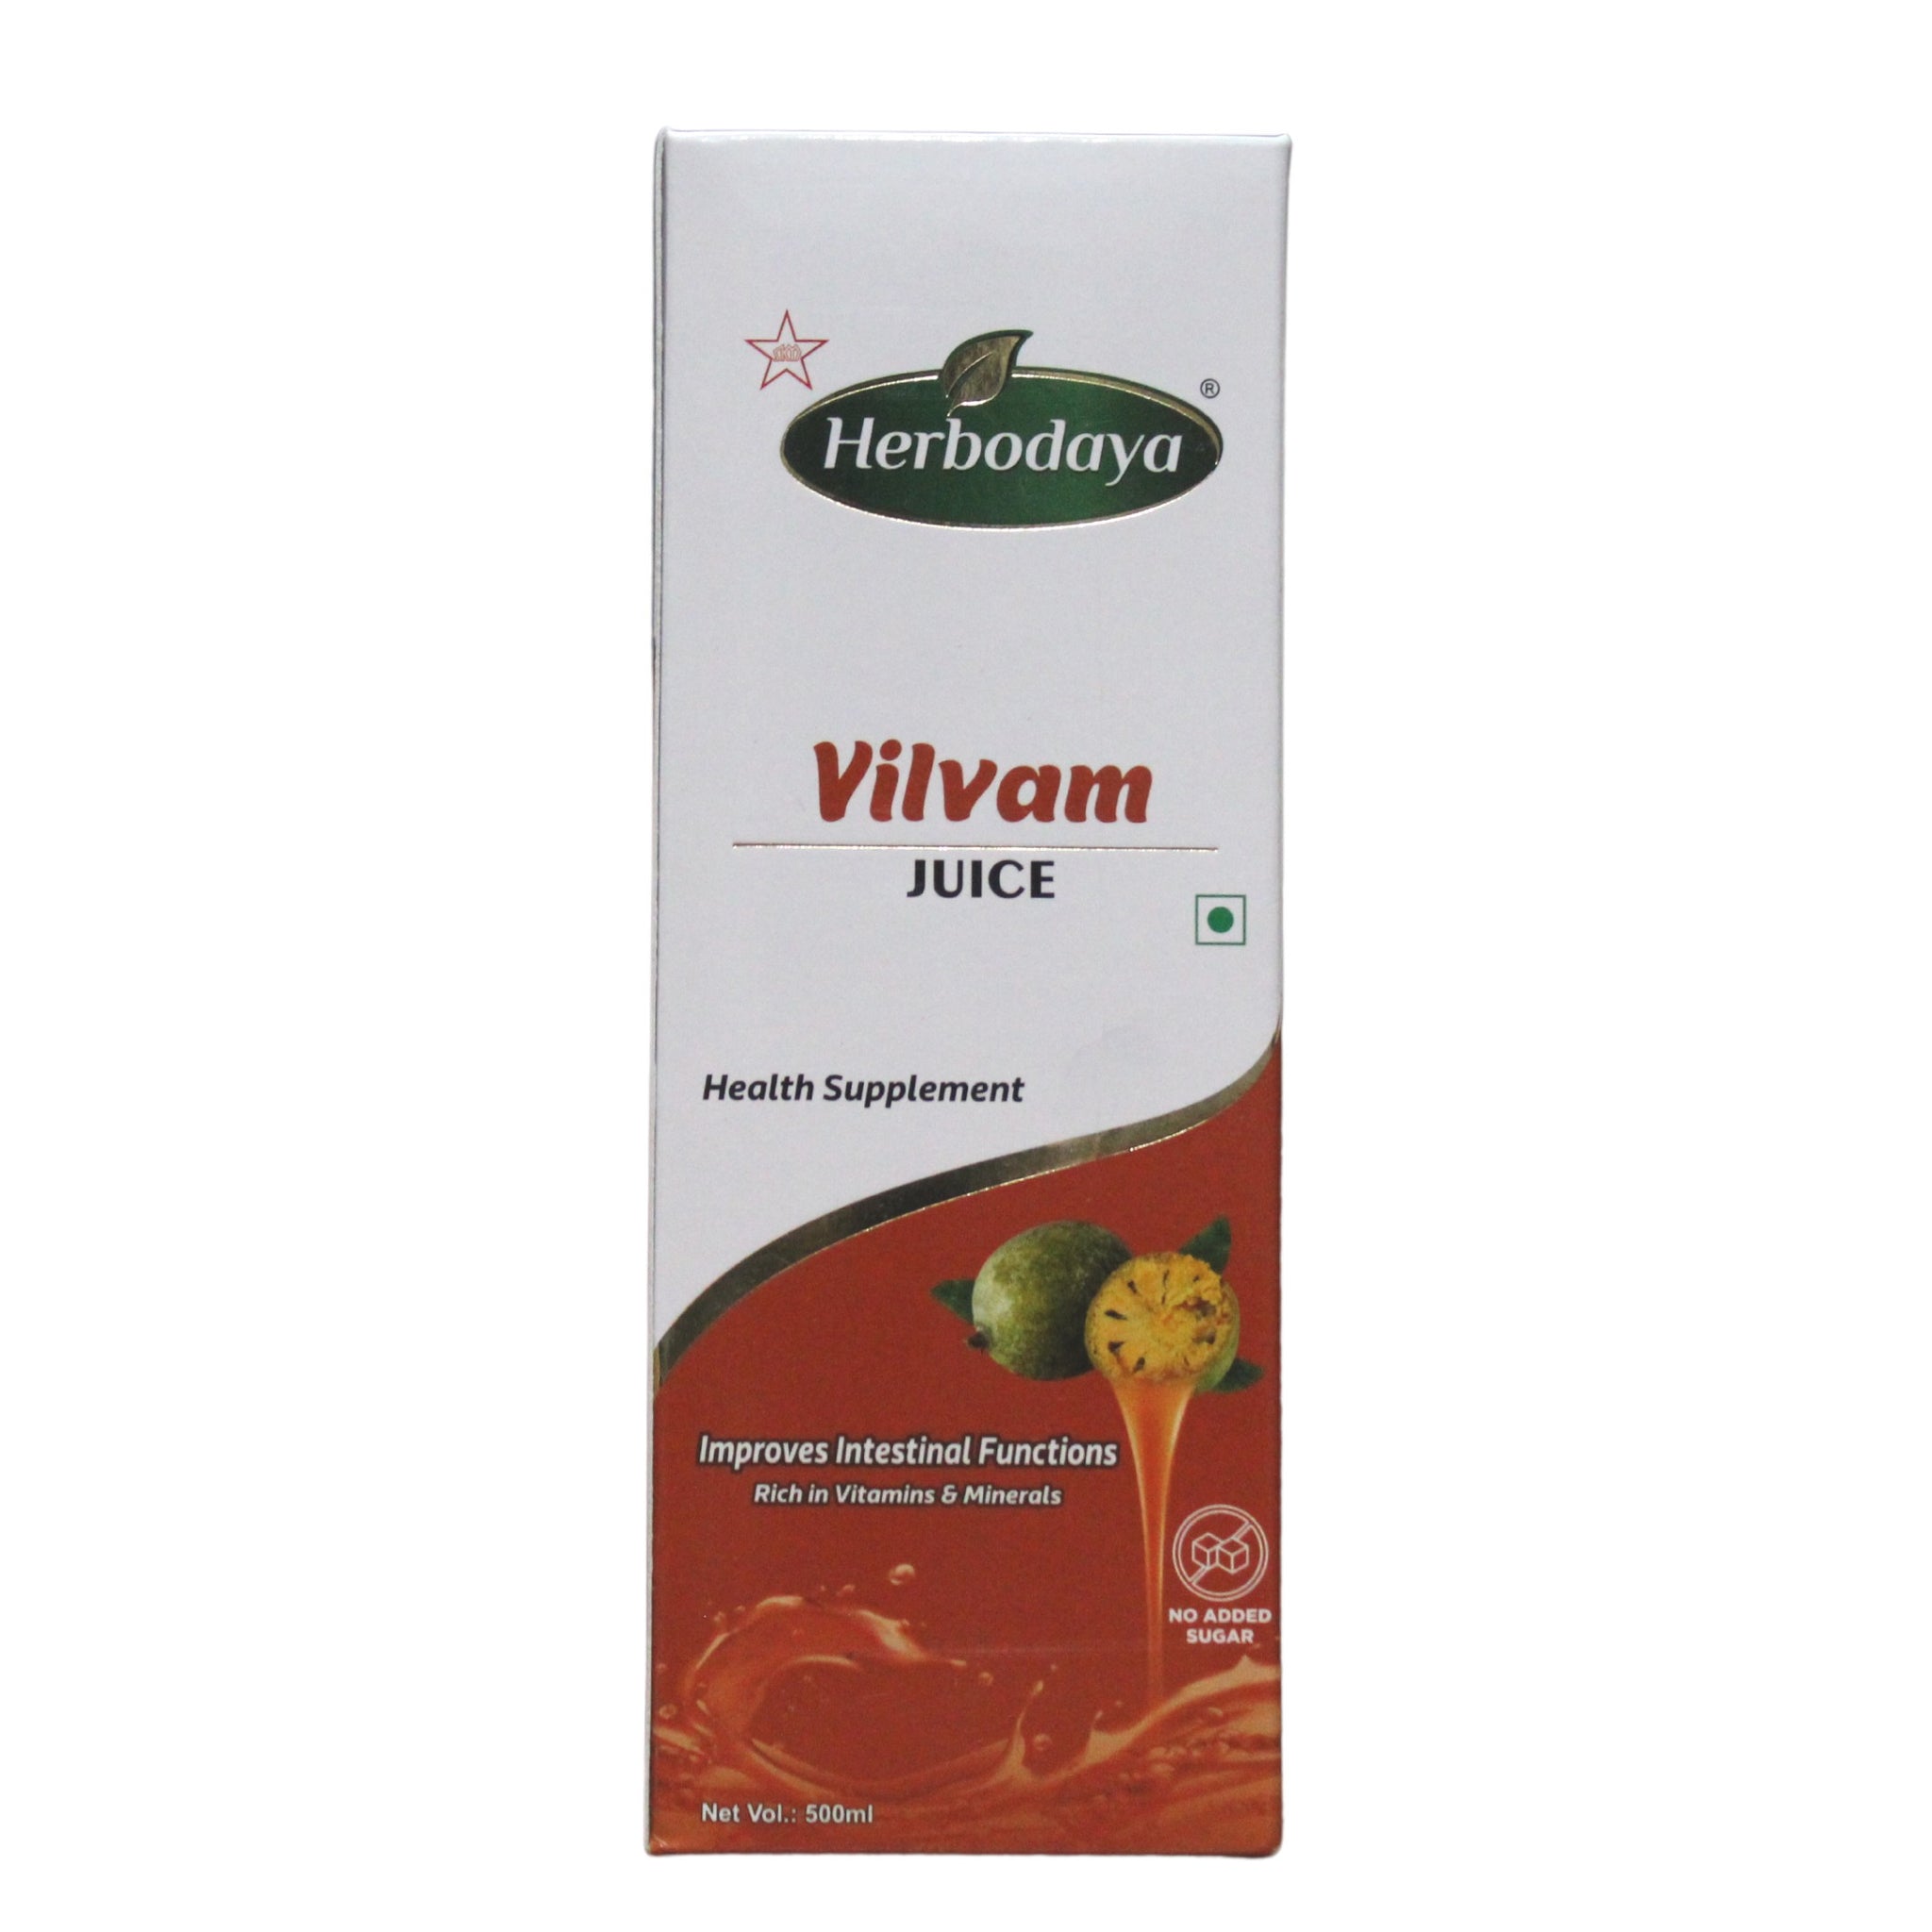 Herbodaya Vilvam Juice 500ml Herbodaya